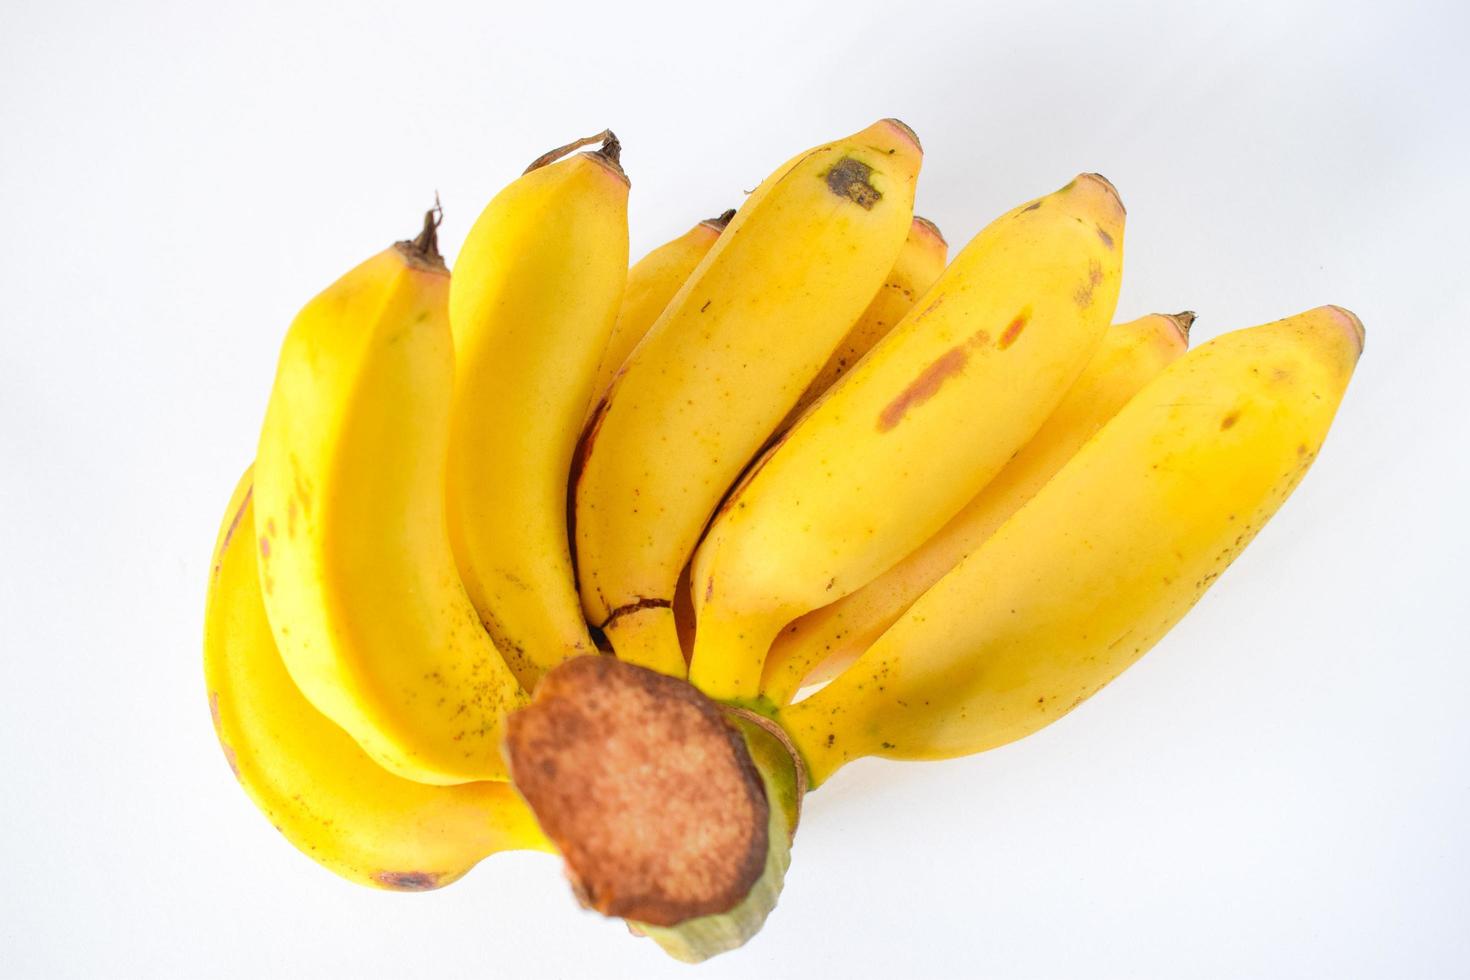 Foto de primer plano de plátano fresco aislado sobre fondo blanco.